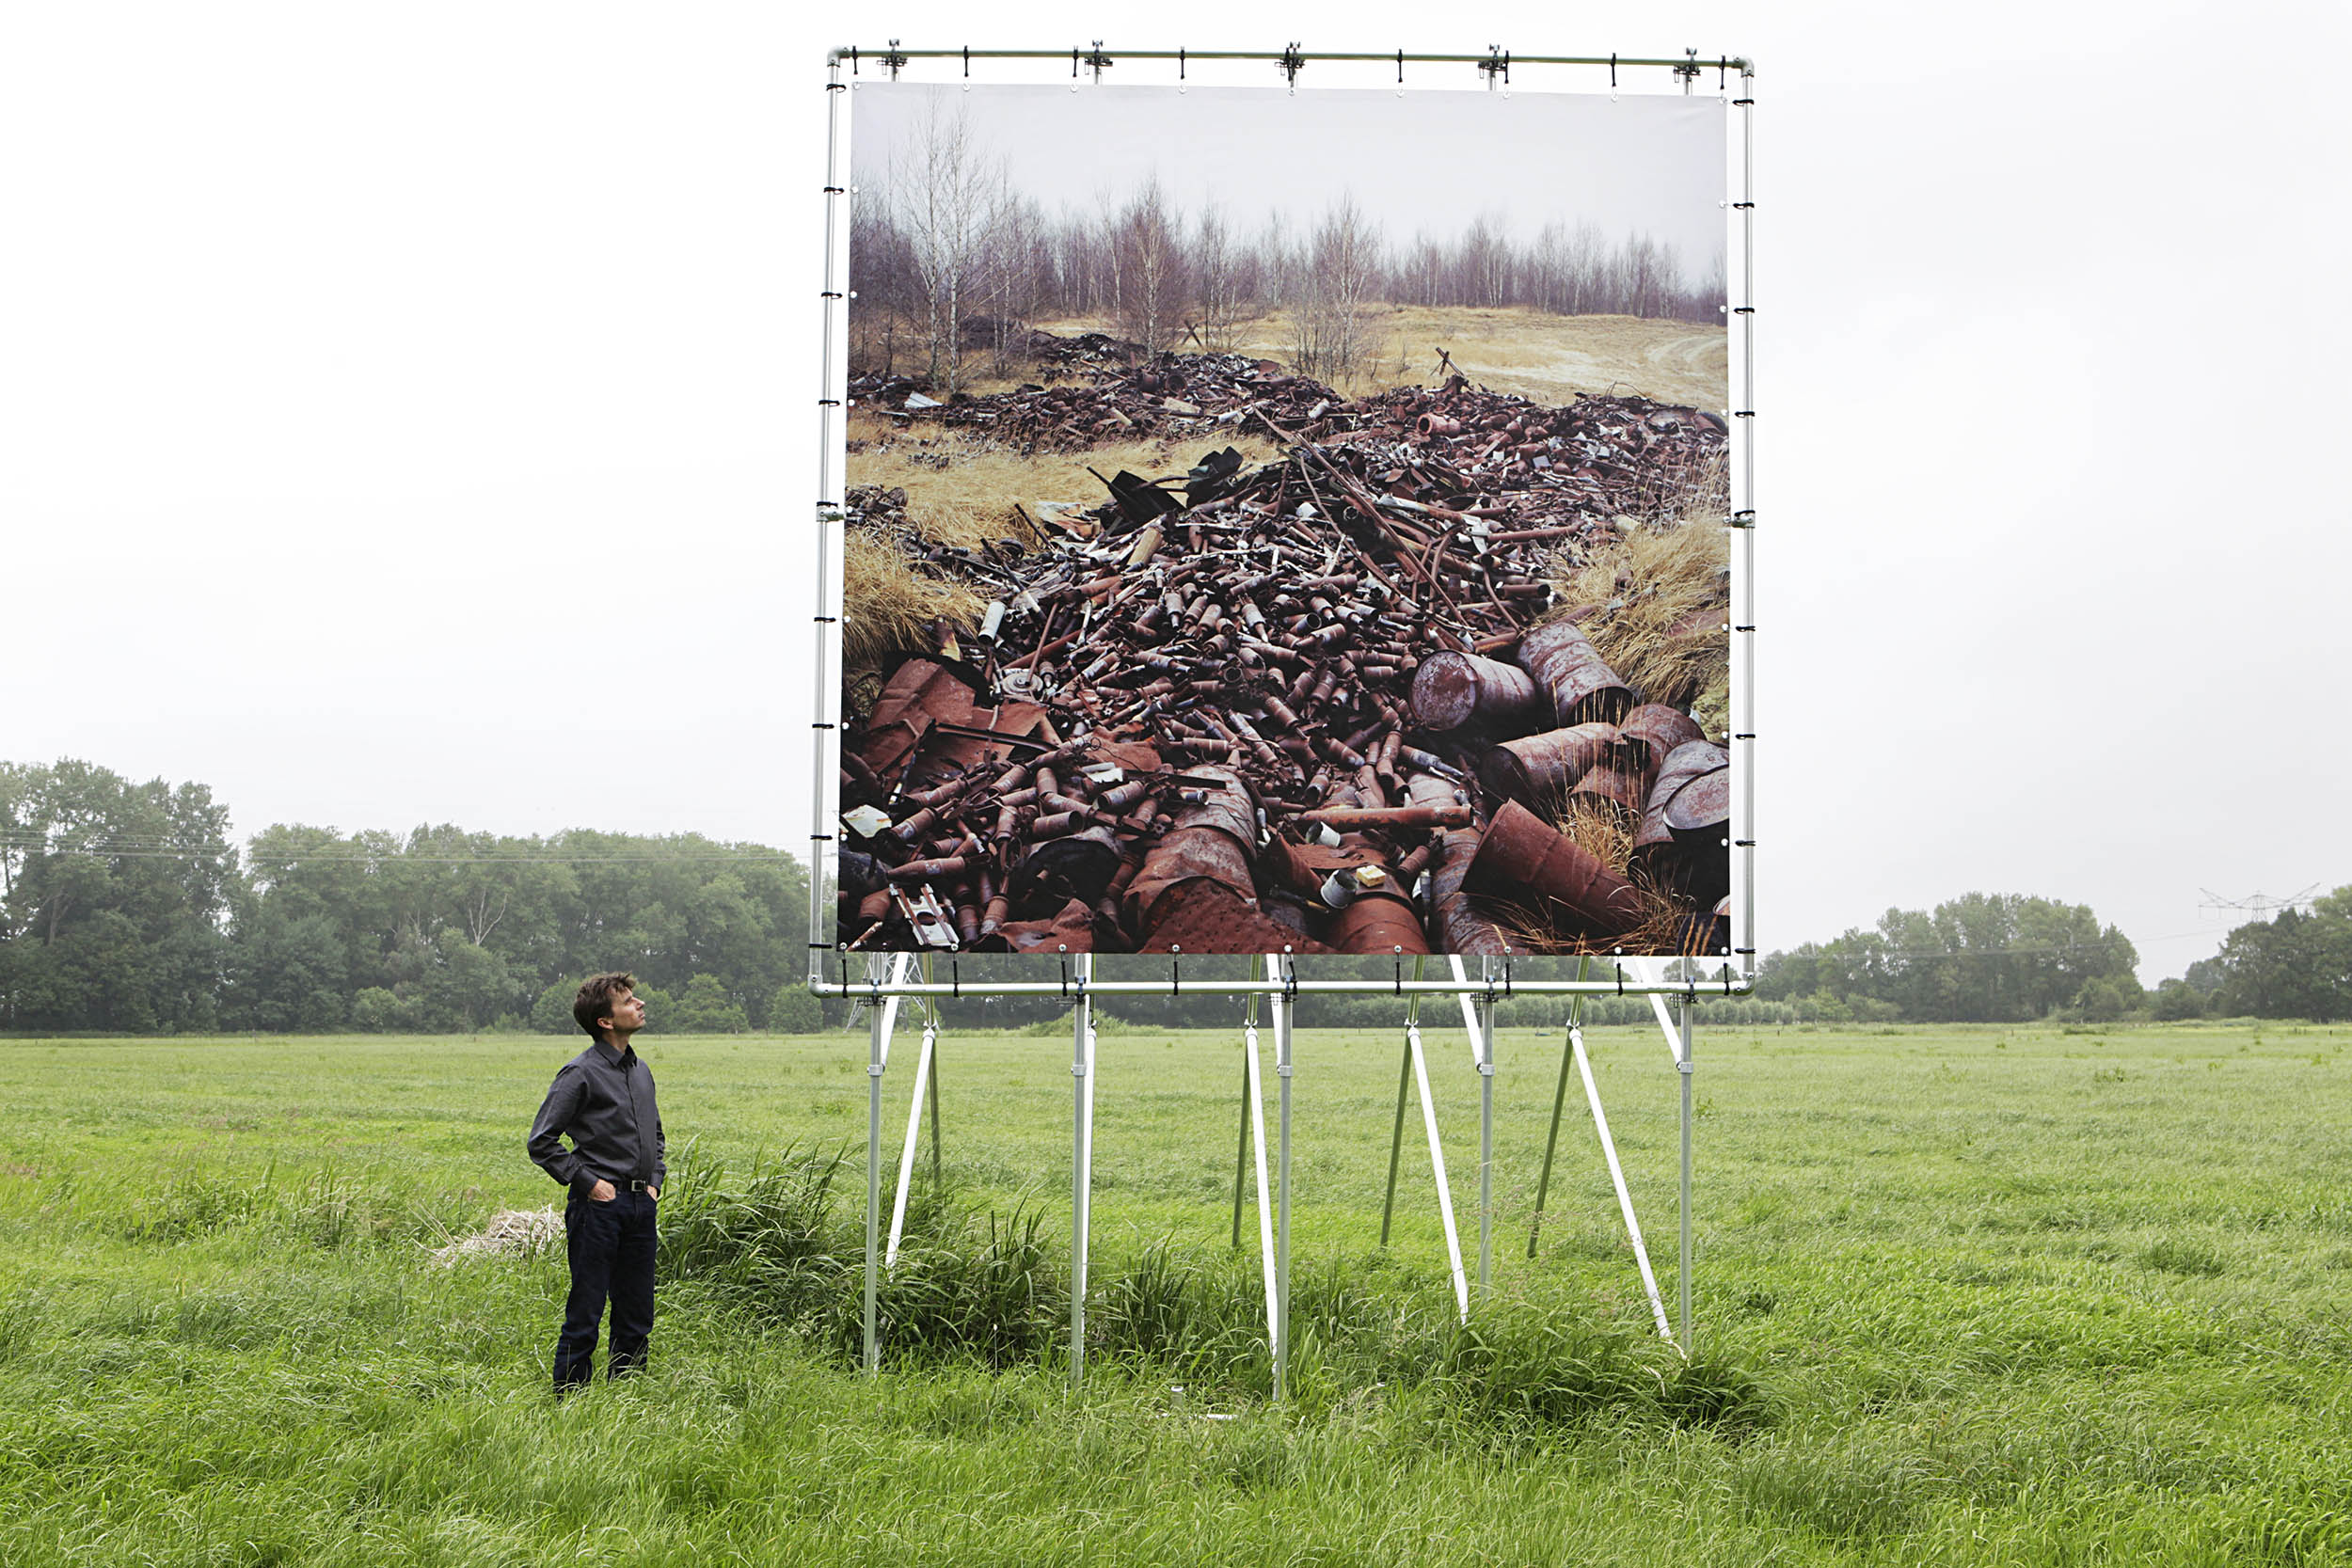 "Elders. Idylle en frictie in het landschap", Sint-Michielsgestel, Netherlands